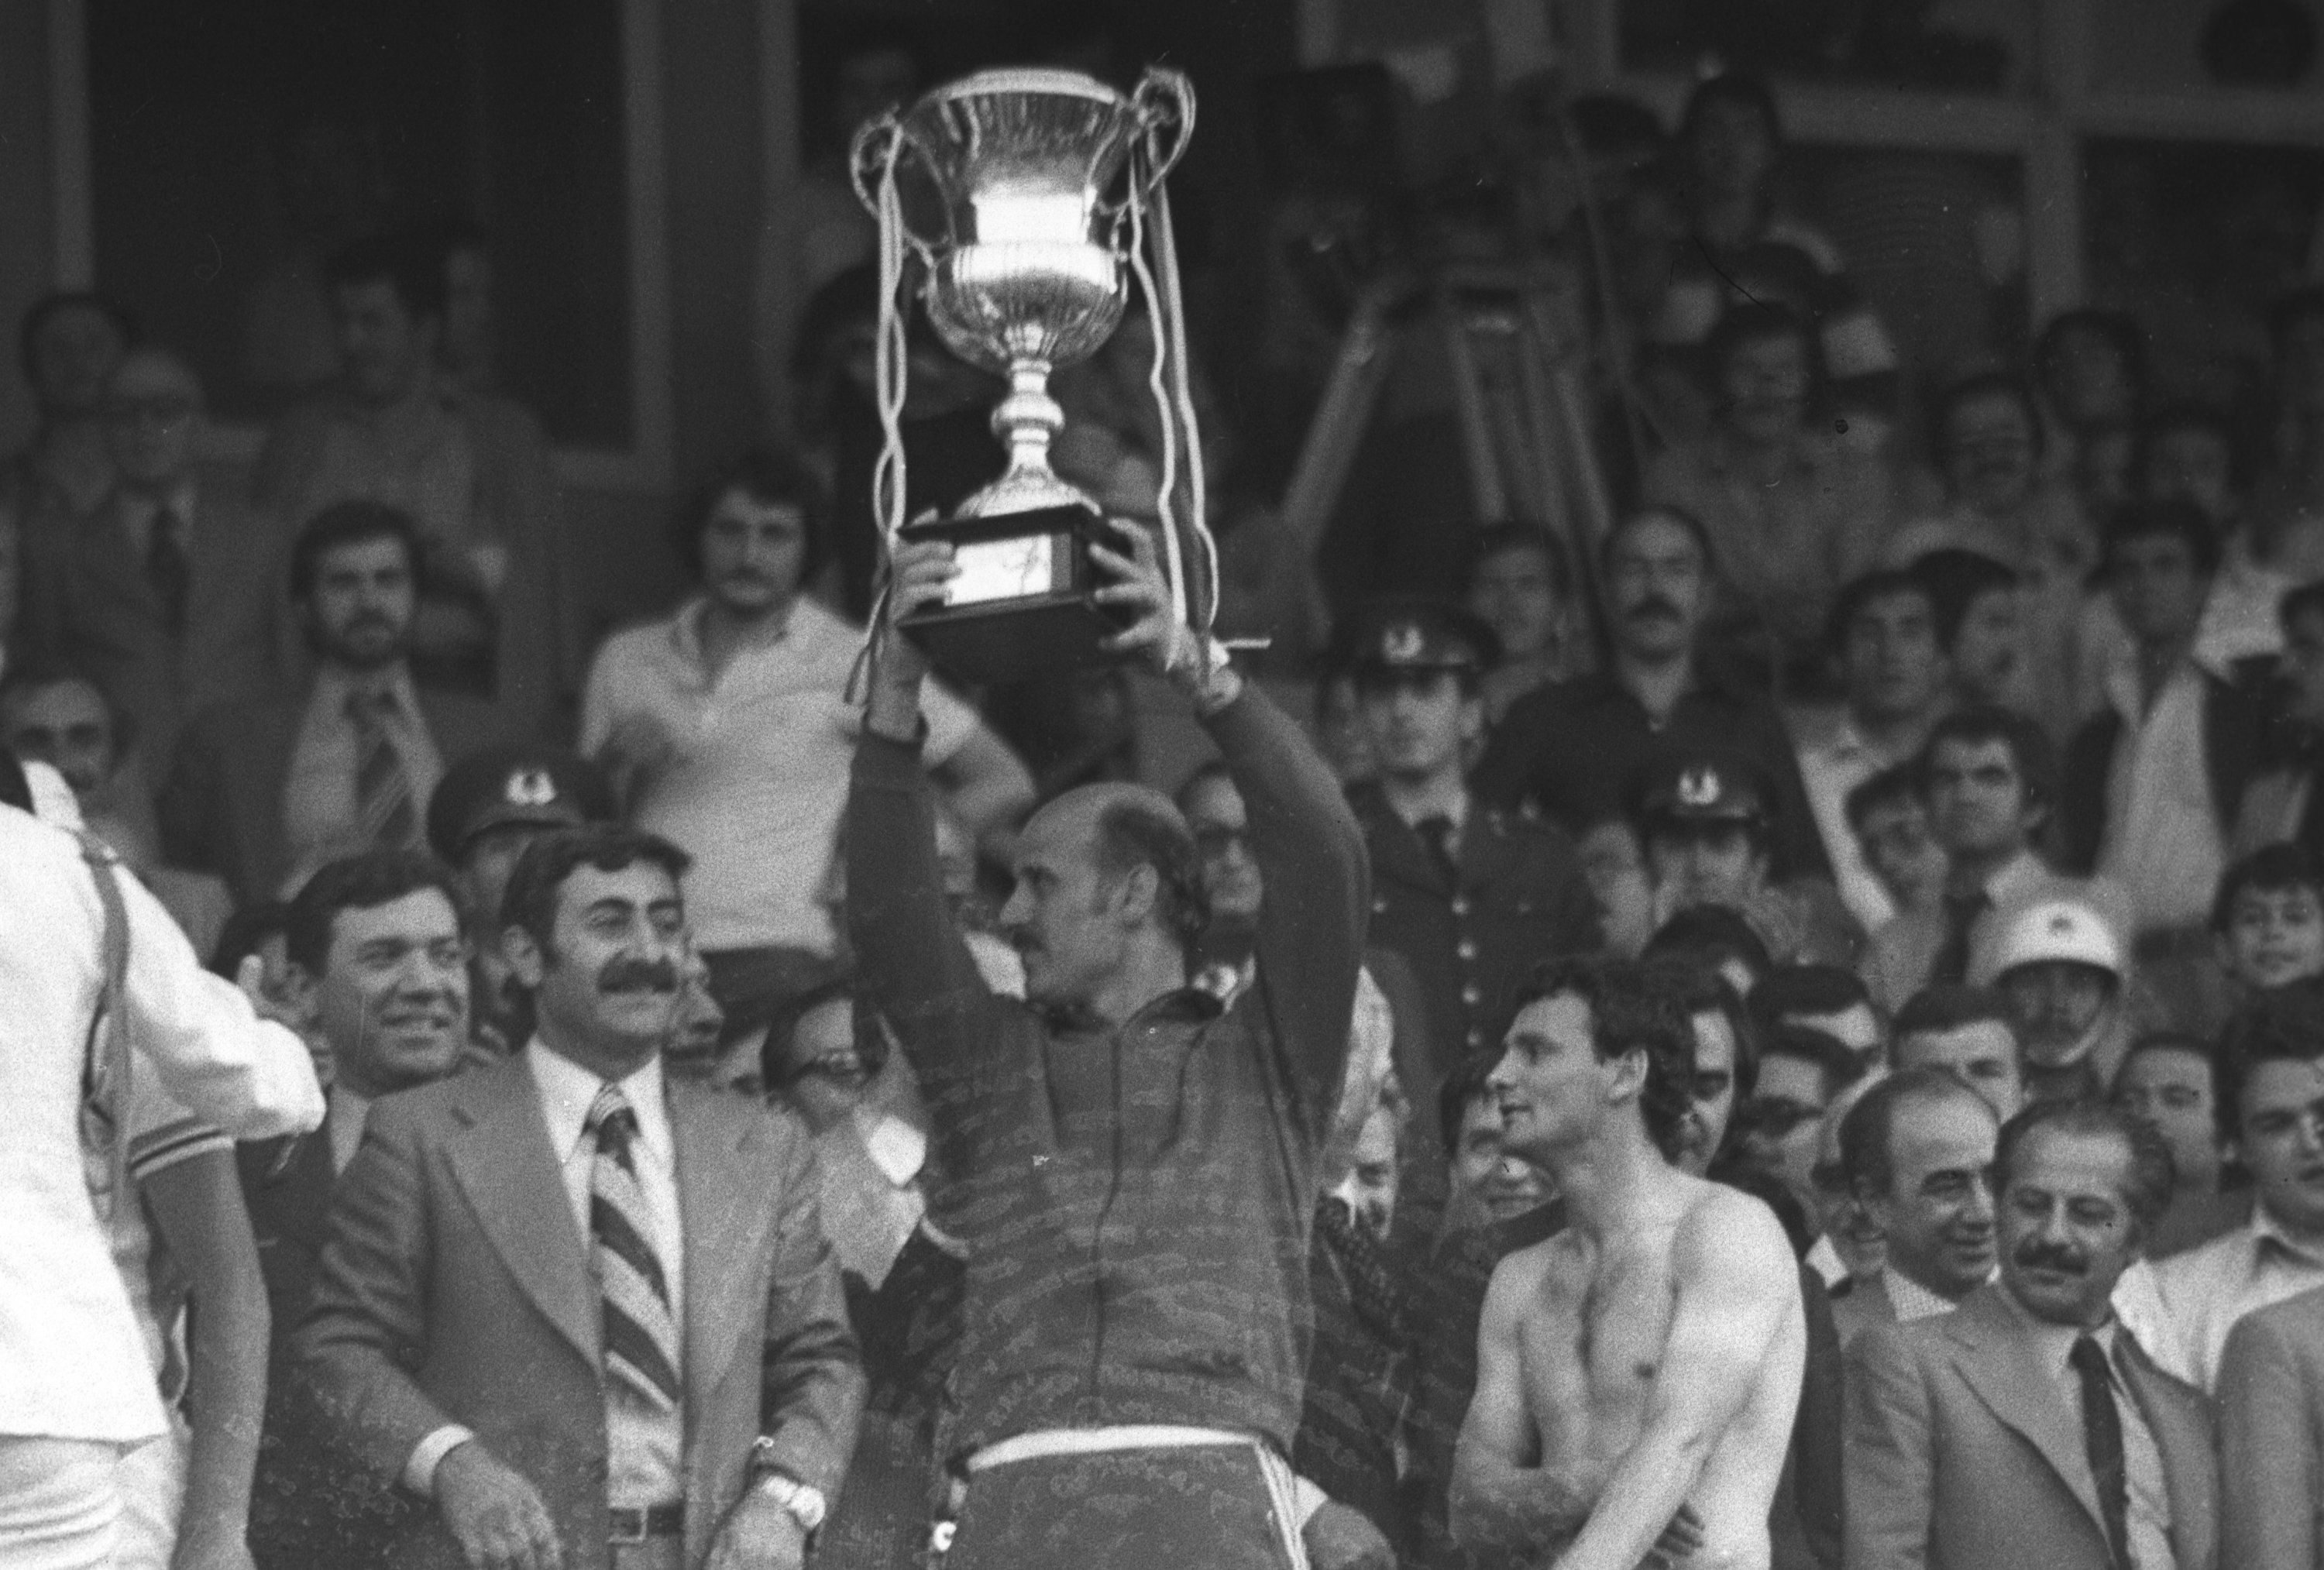 File foto mendiang Ahmet Suat Özyazıcı mengangkat Piala Presiden setelah menang 1-0 atas Fenerbahçe, 13 Juni 1978. (Foto AA)